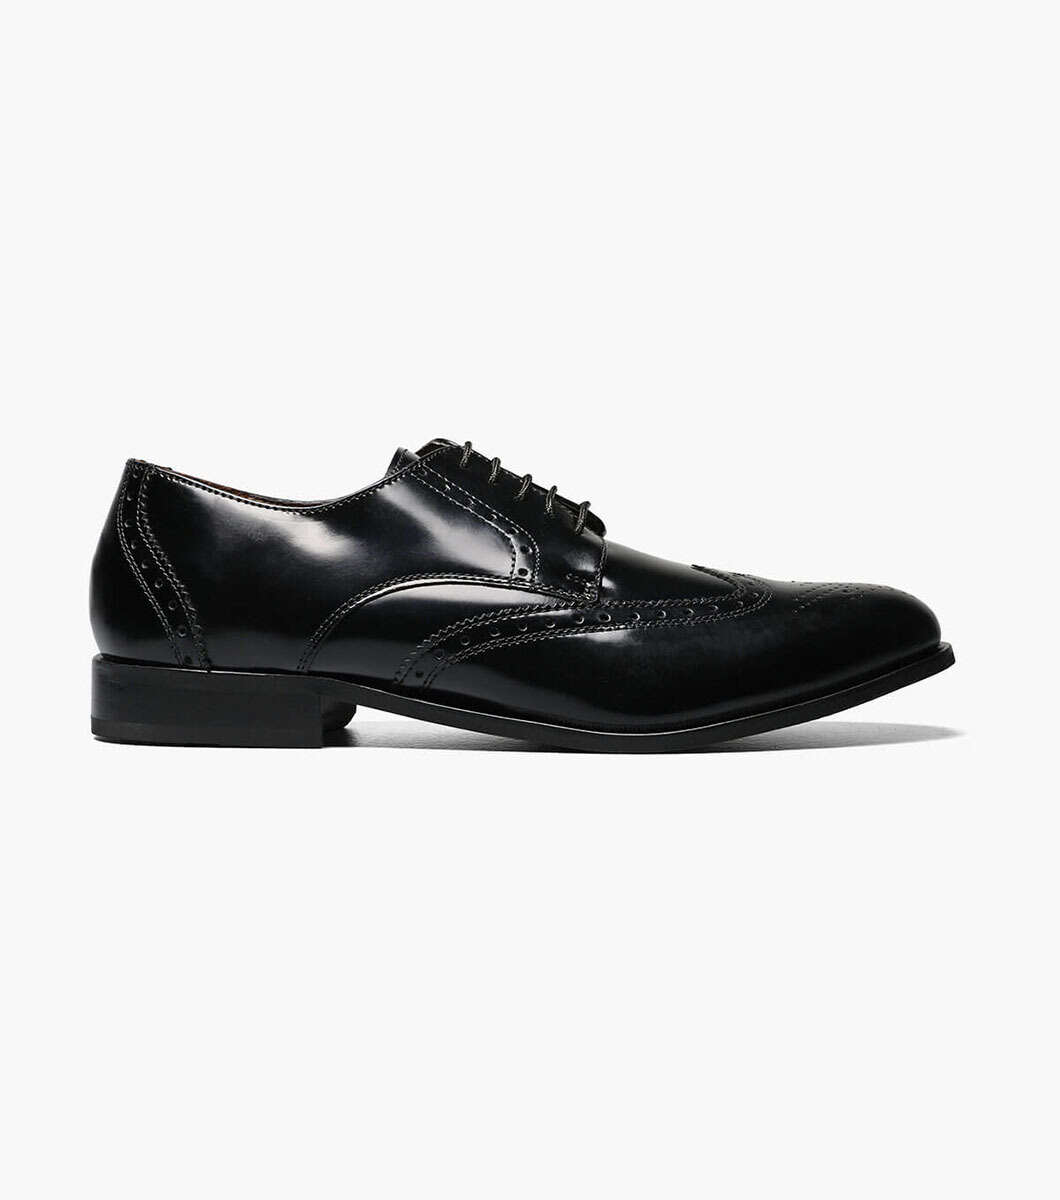 Florsheim Men's Brookside leather wing tip oxford Black Shoes 11231-001 